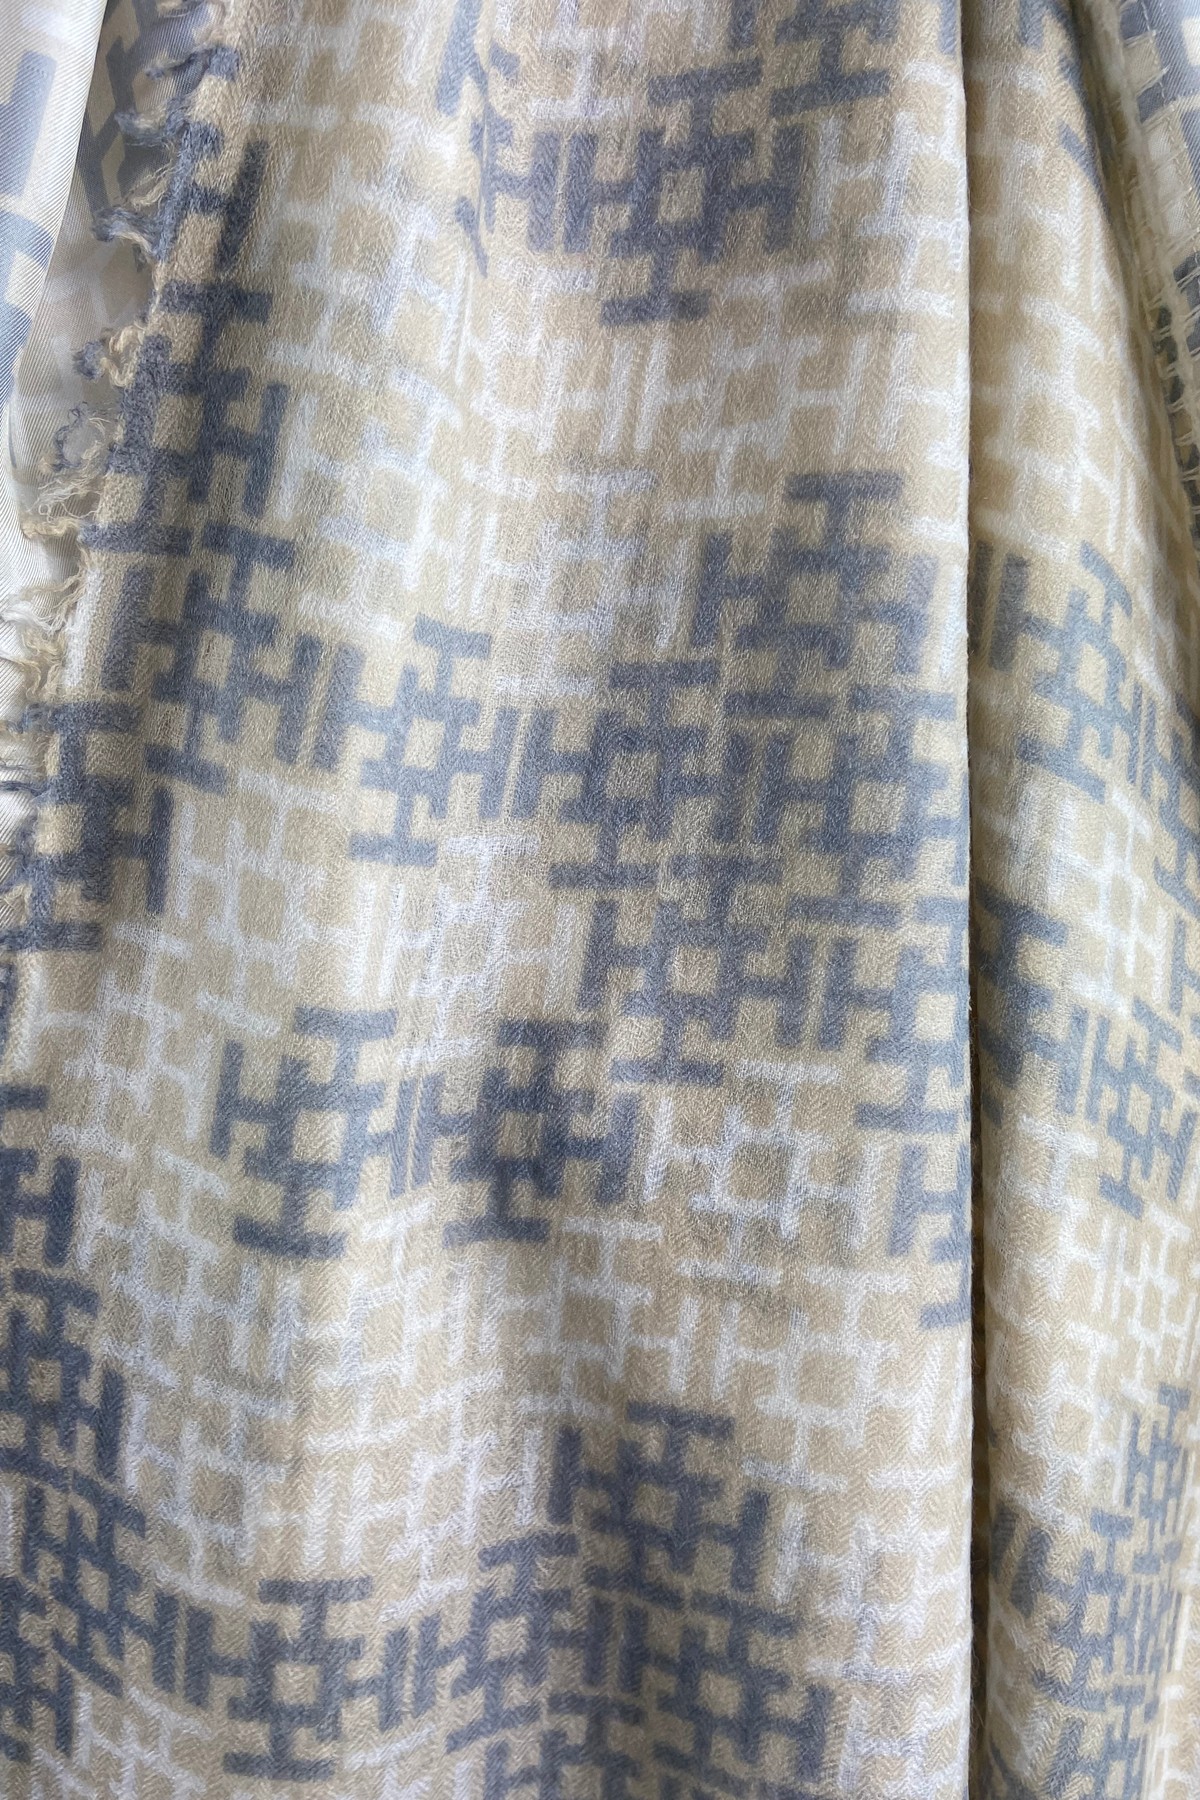 Hemisphere - IMIXALIKIBI - Sjaal H-print zijde wol beige grijs - uitverkocht